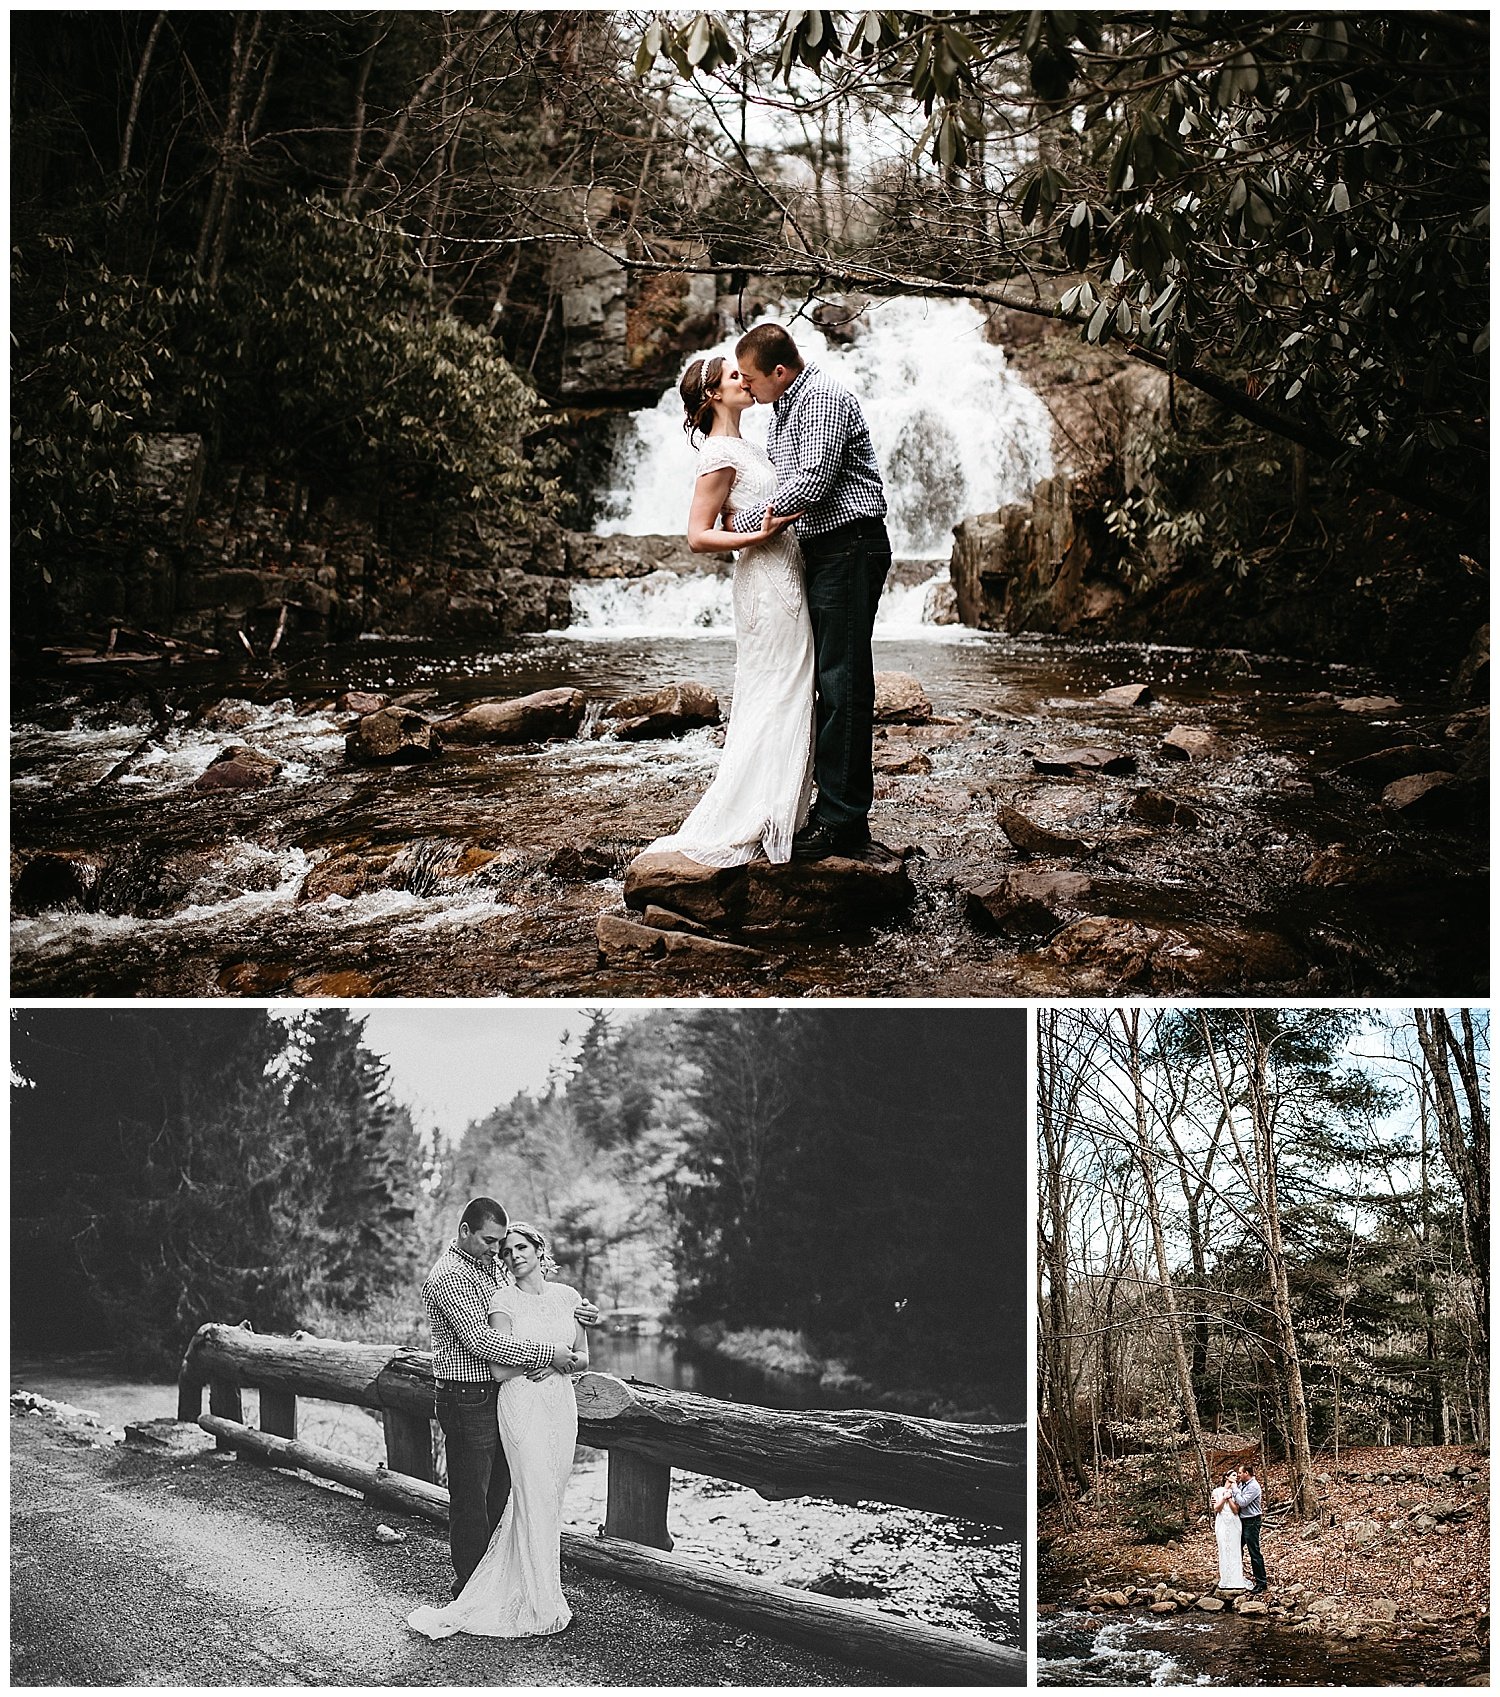 NEPA-Wedding-Engagement-photographer-hickory-run-state-park-hawk-falls-elopement_0031.jpg